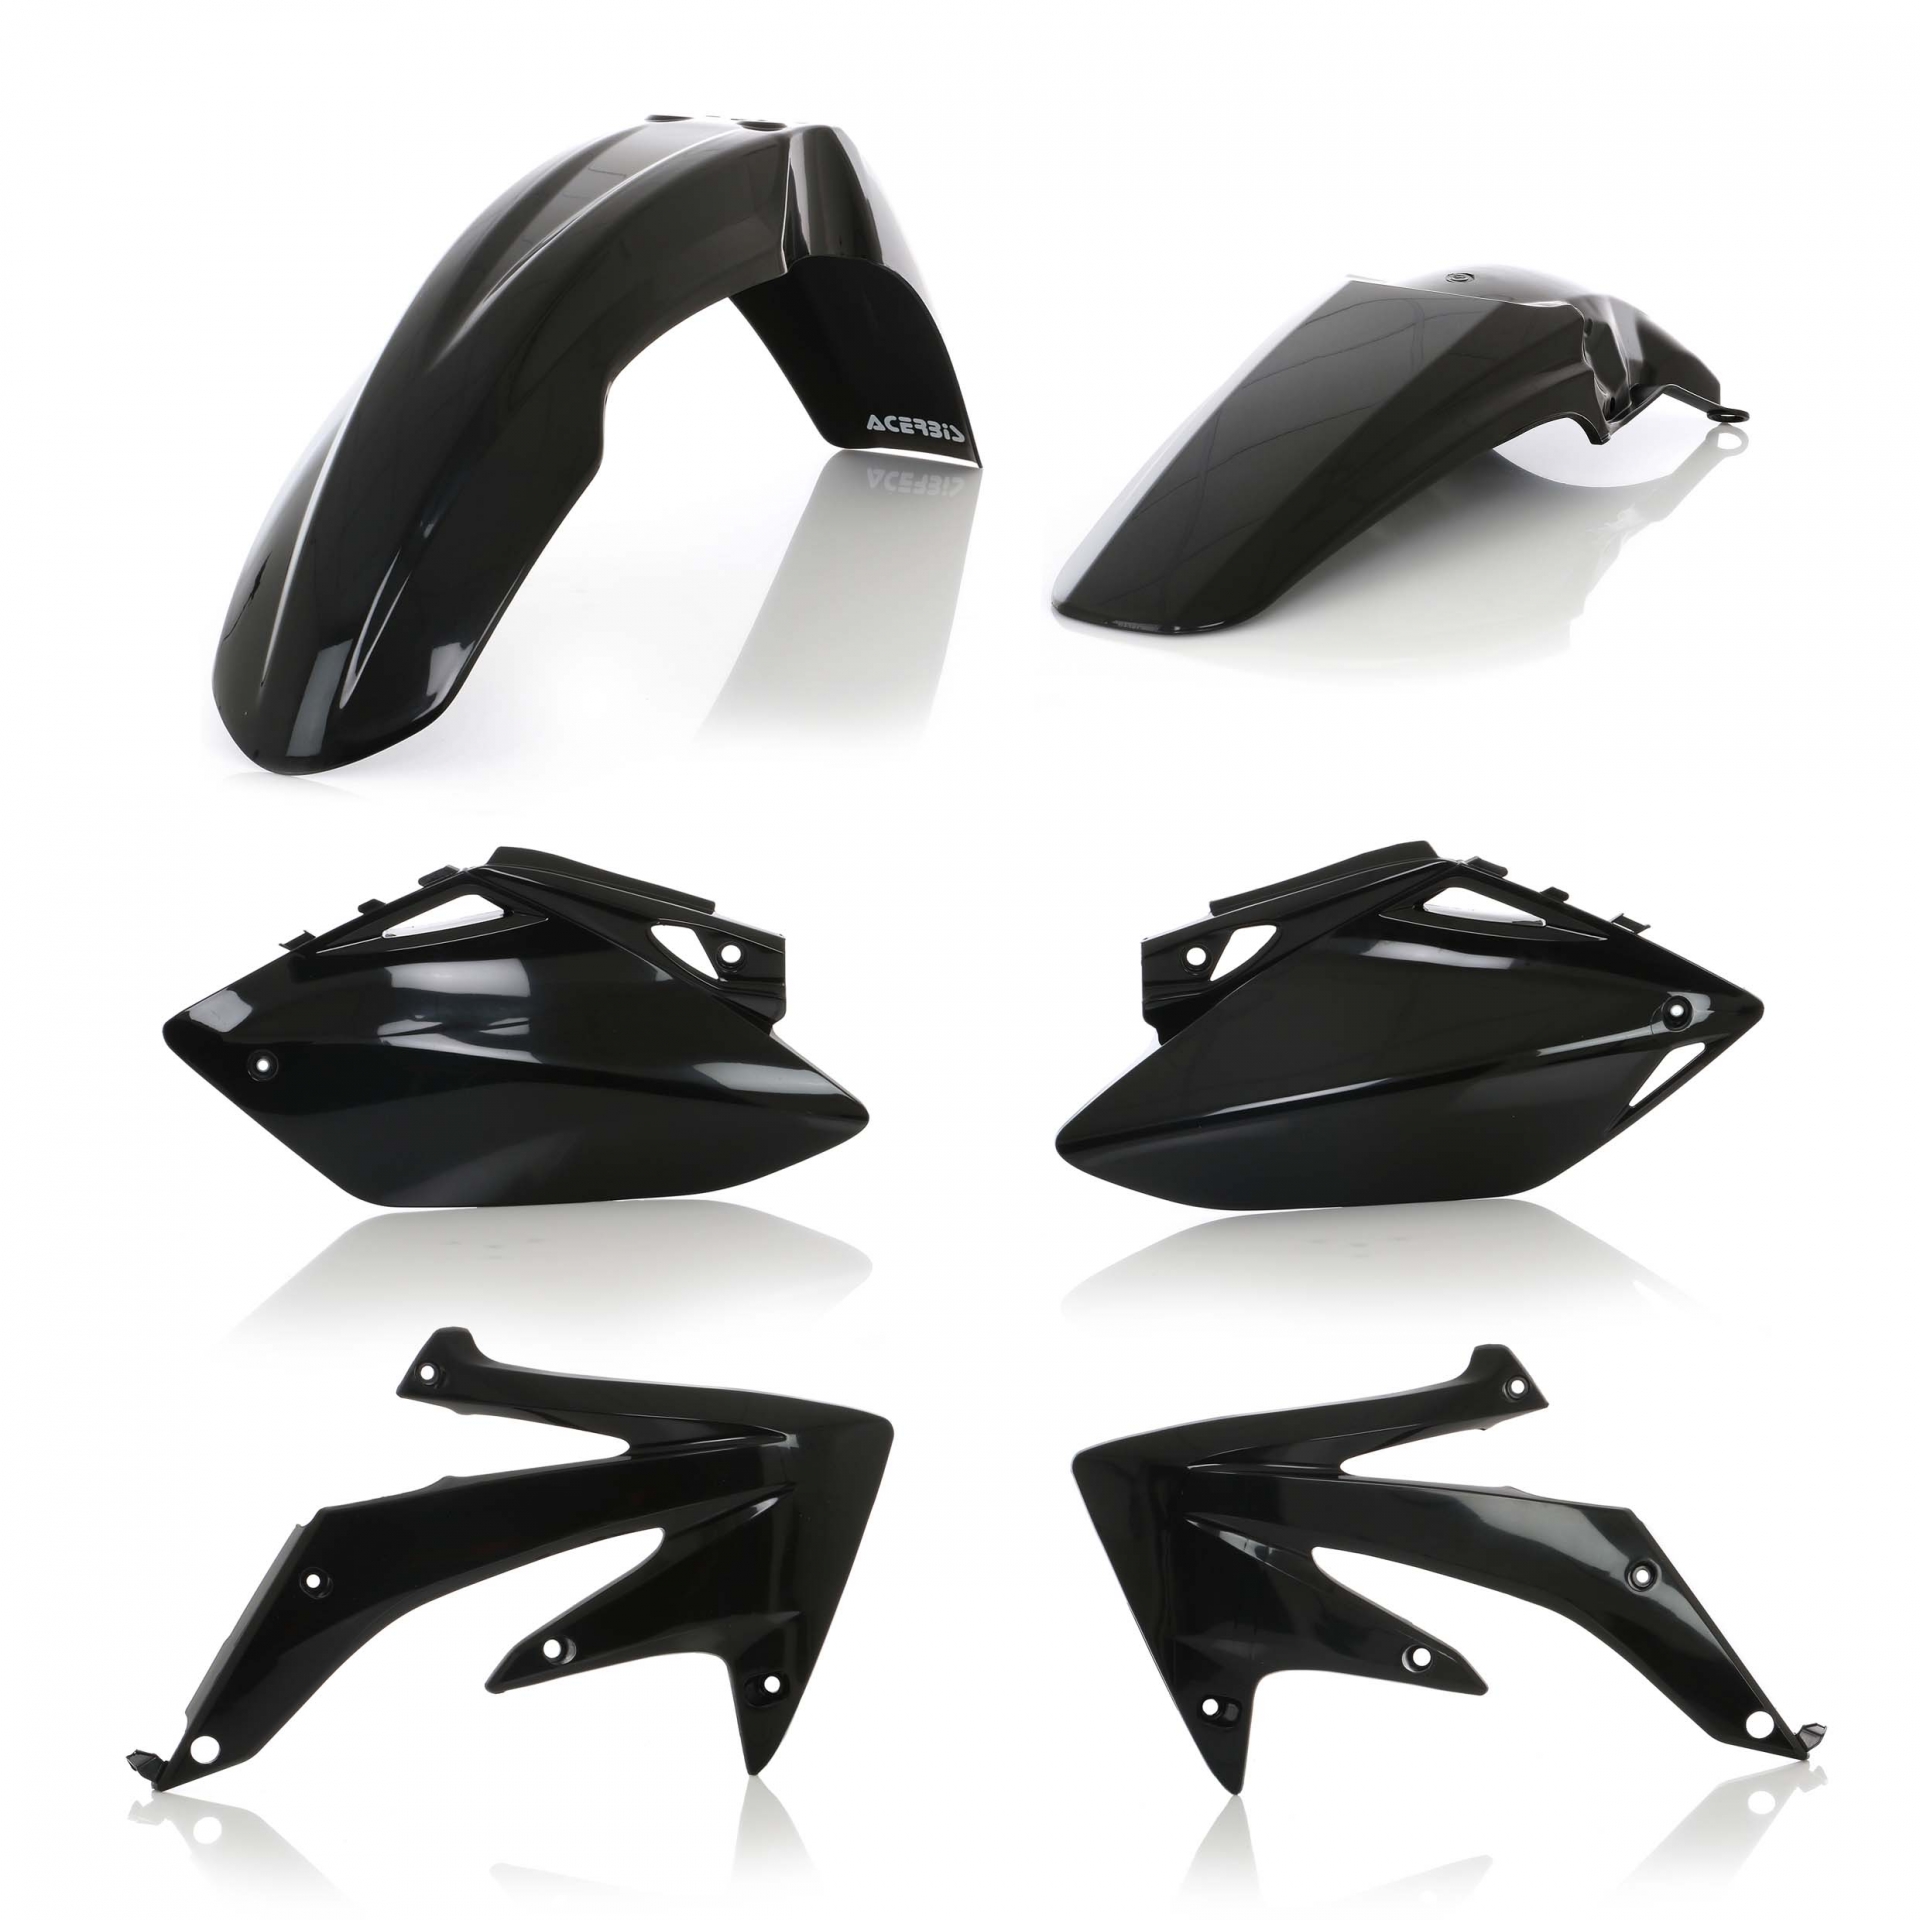 Plastikteile für deine Honda CRF / CR 450 in schwarz bestehend aus Kotflügel vorn Kotflügel hinten Kühlerspoiler Seitenteile